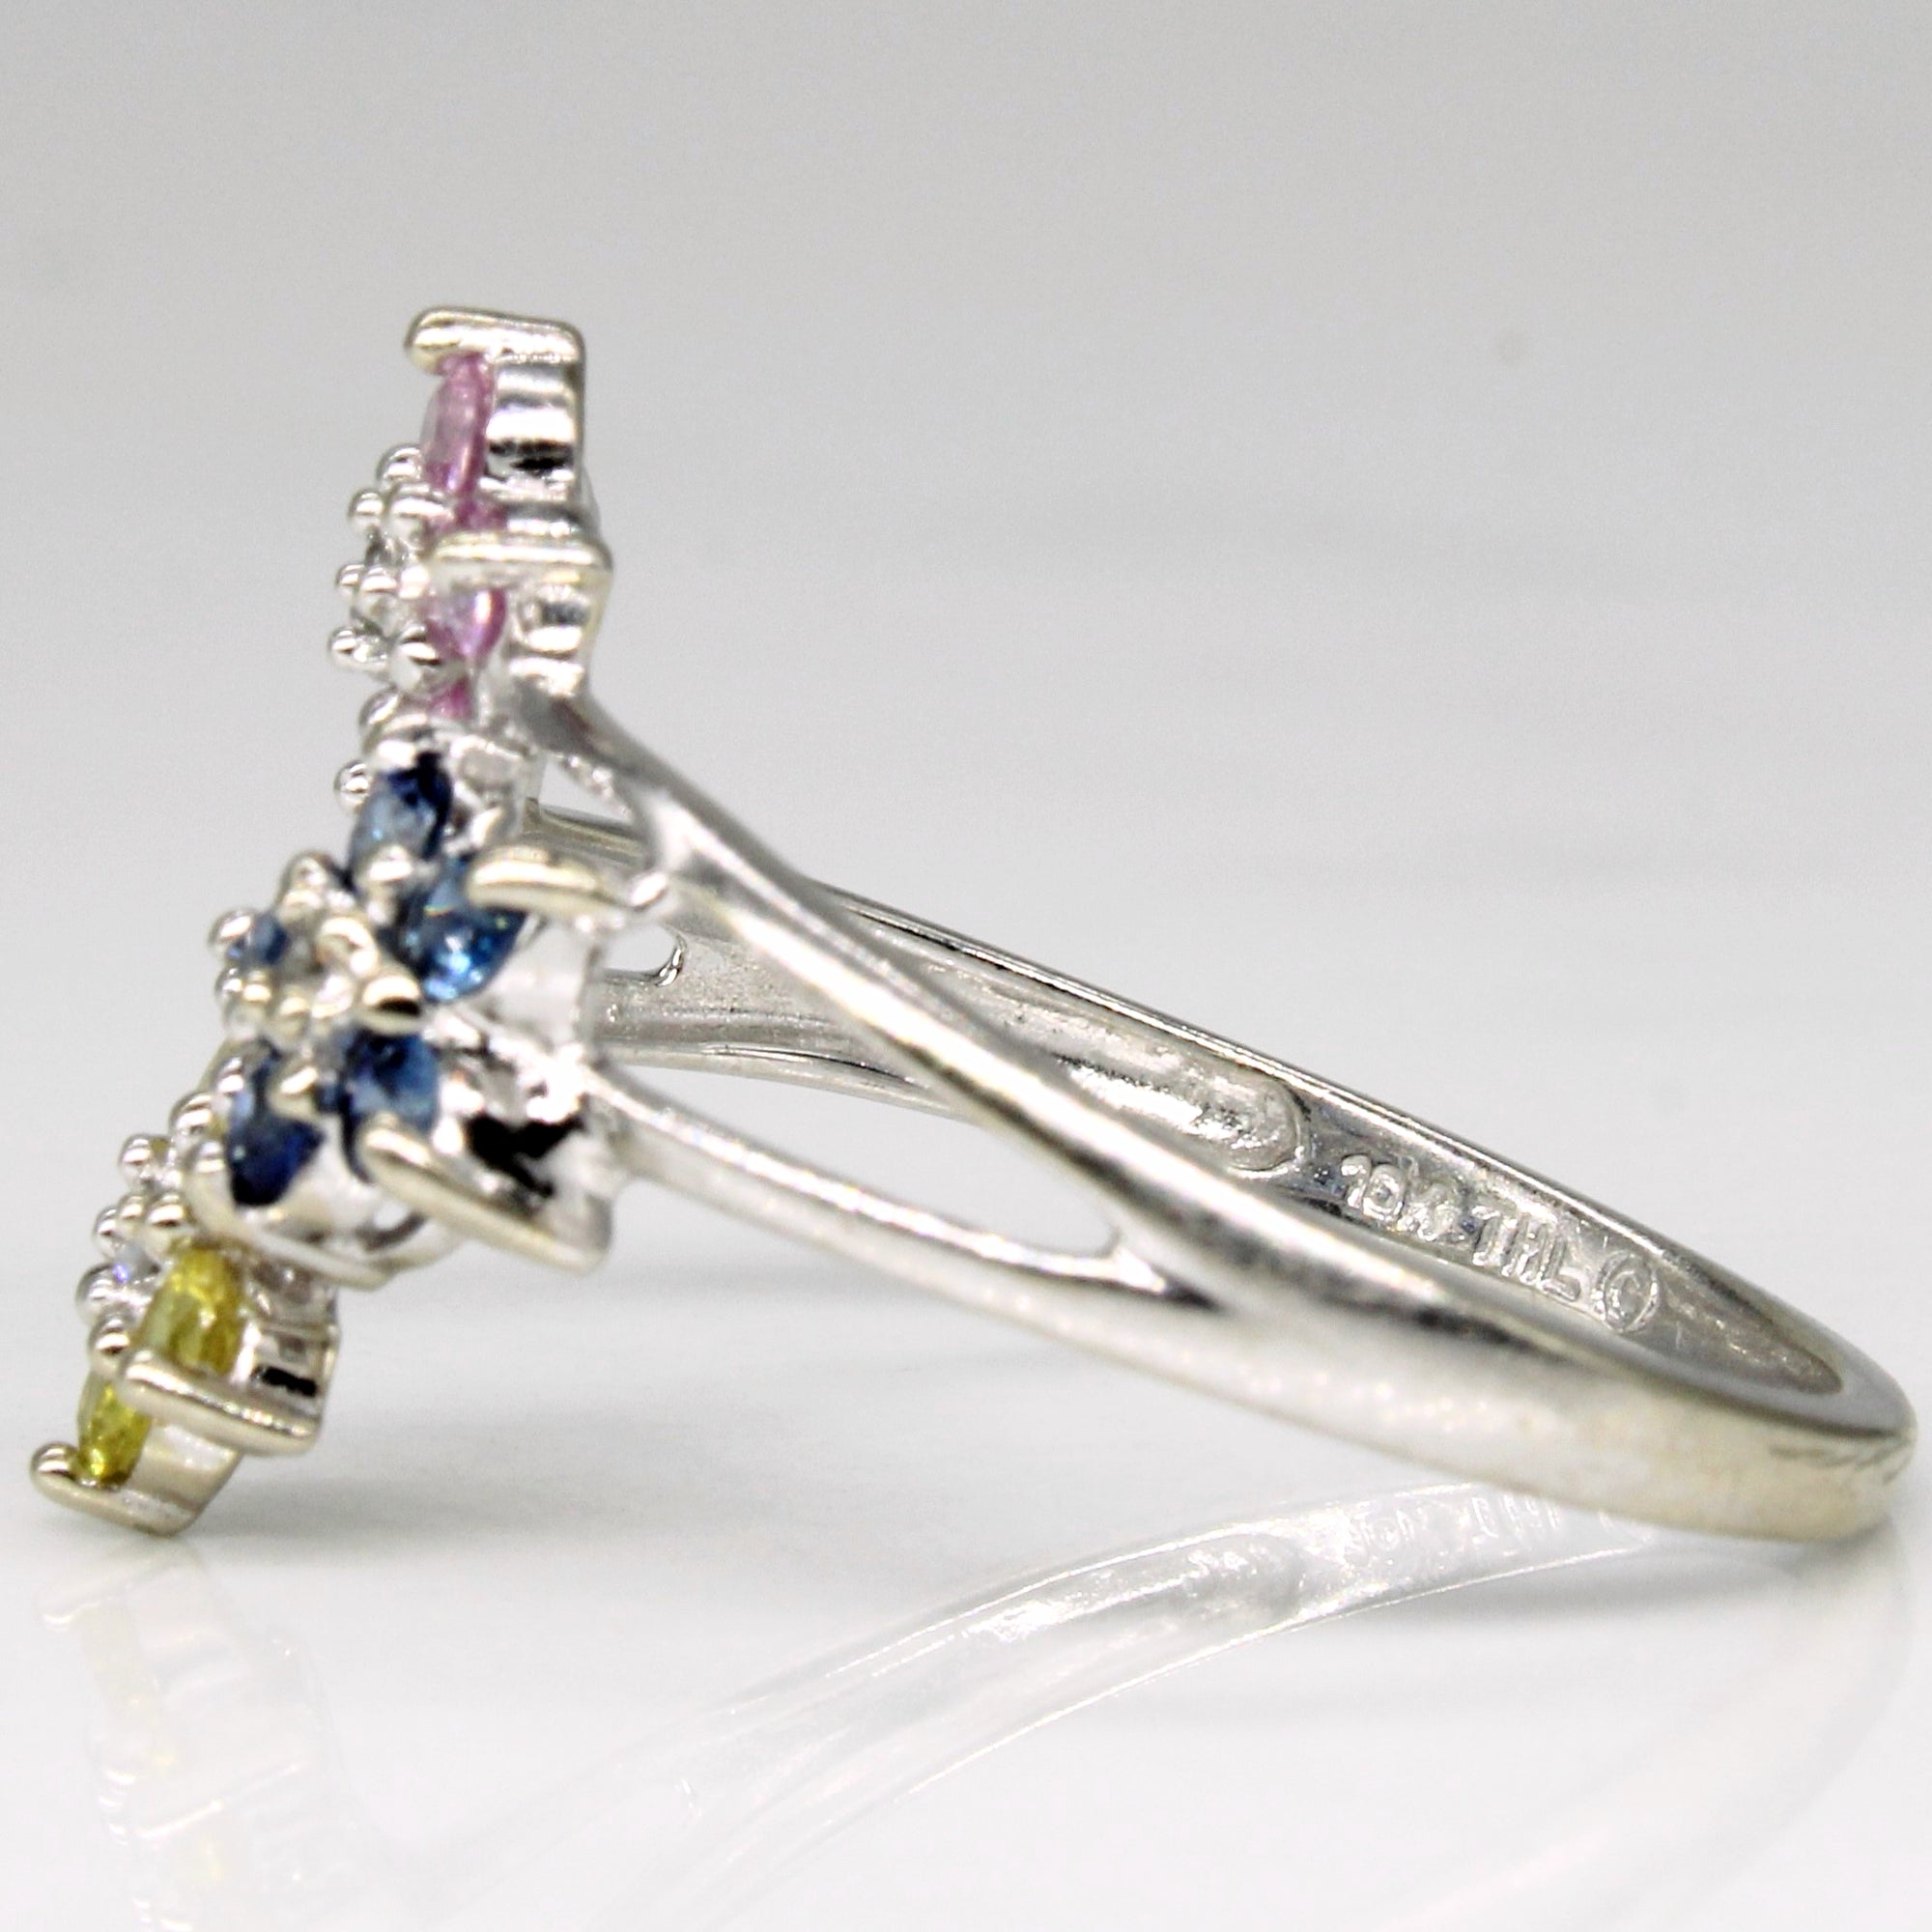 Multi Colour Sapphire Floral Ring | 0.45ctw, 0.02ctw | SZ 7.25 |